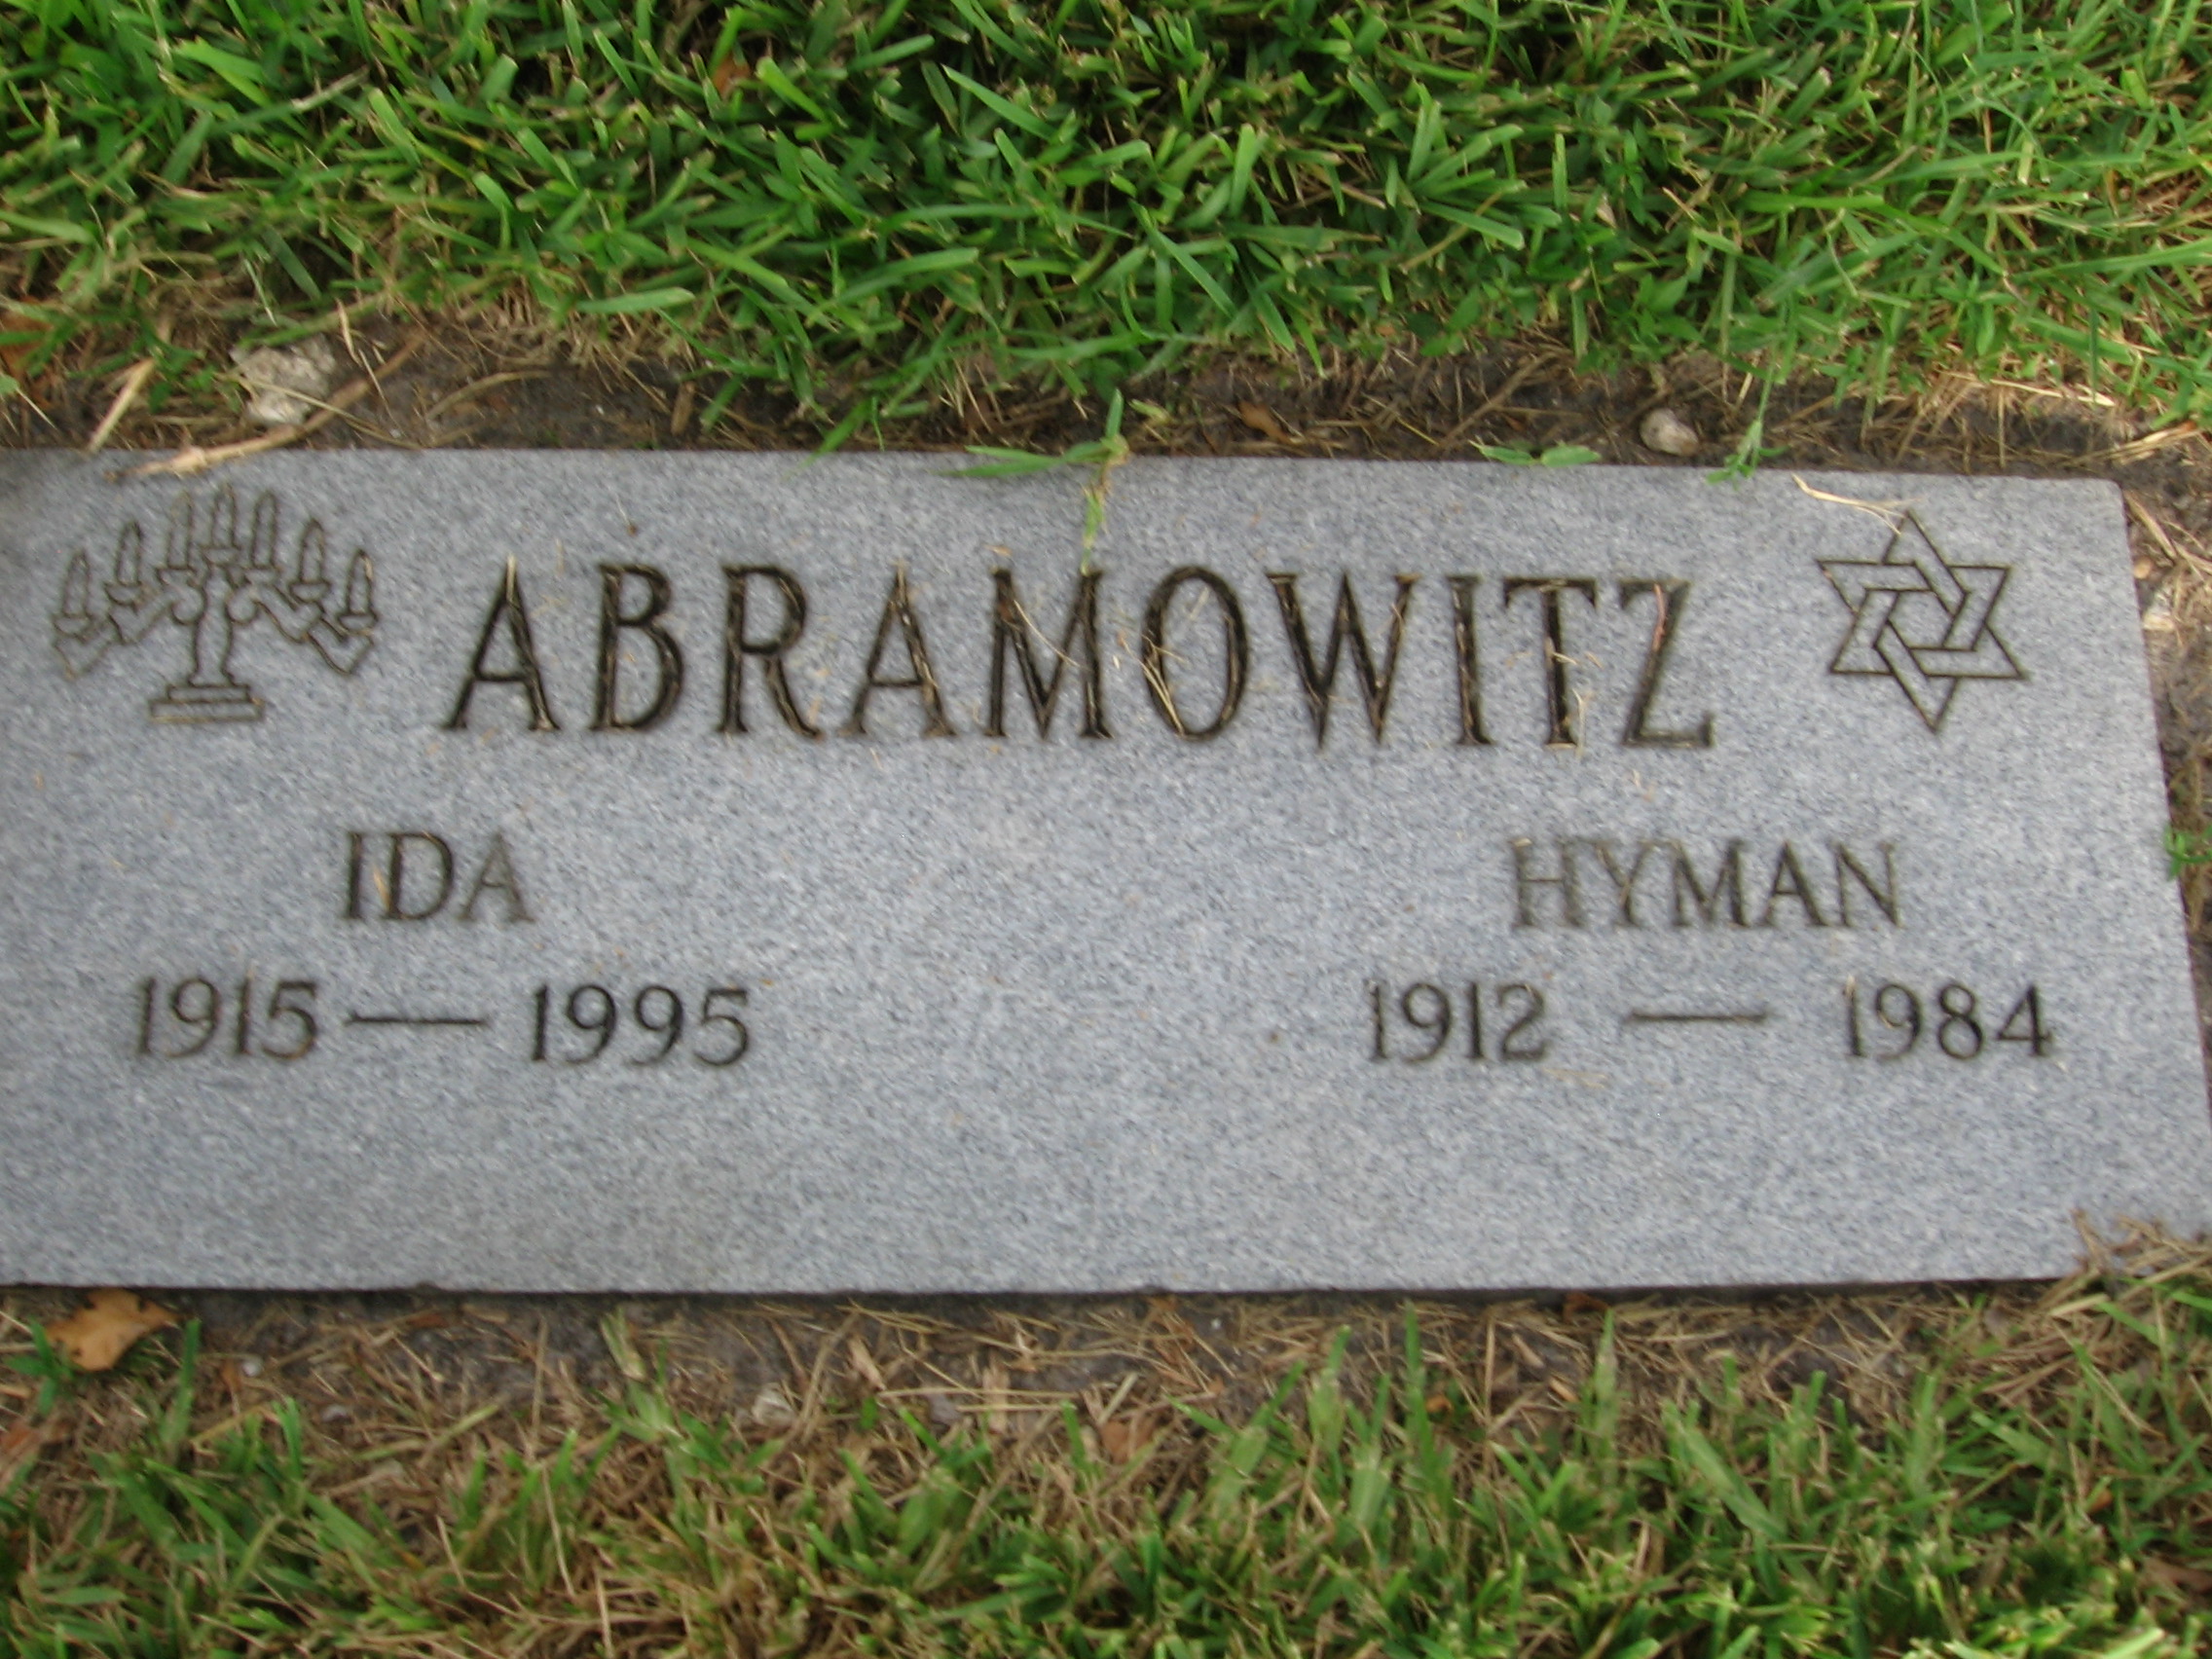 Hyman Abramowitz